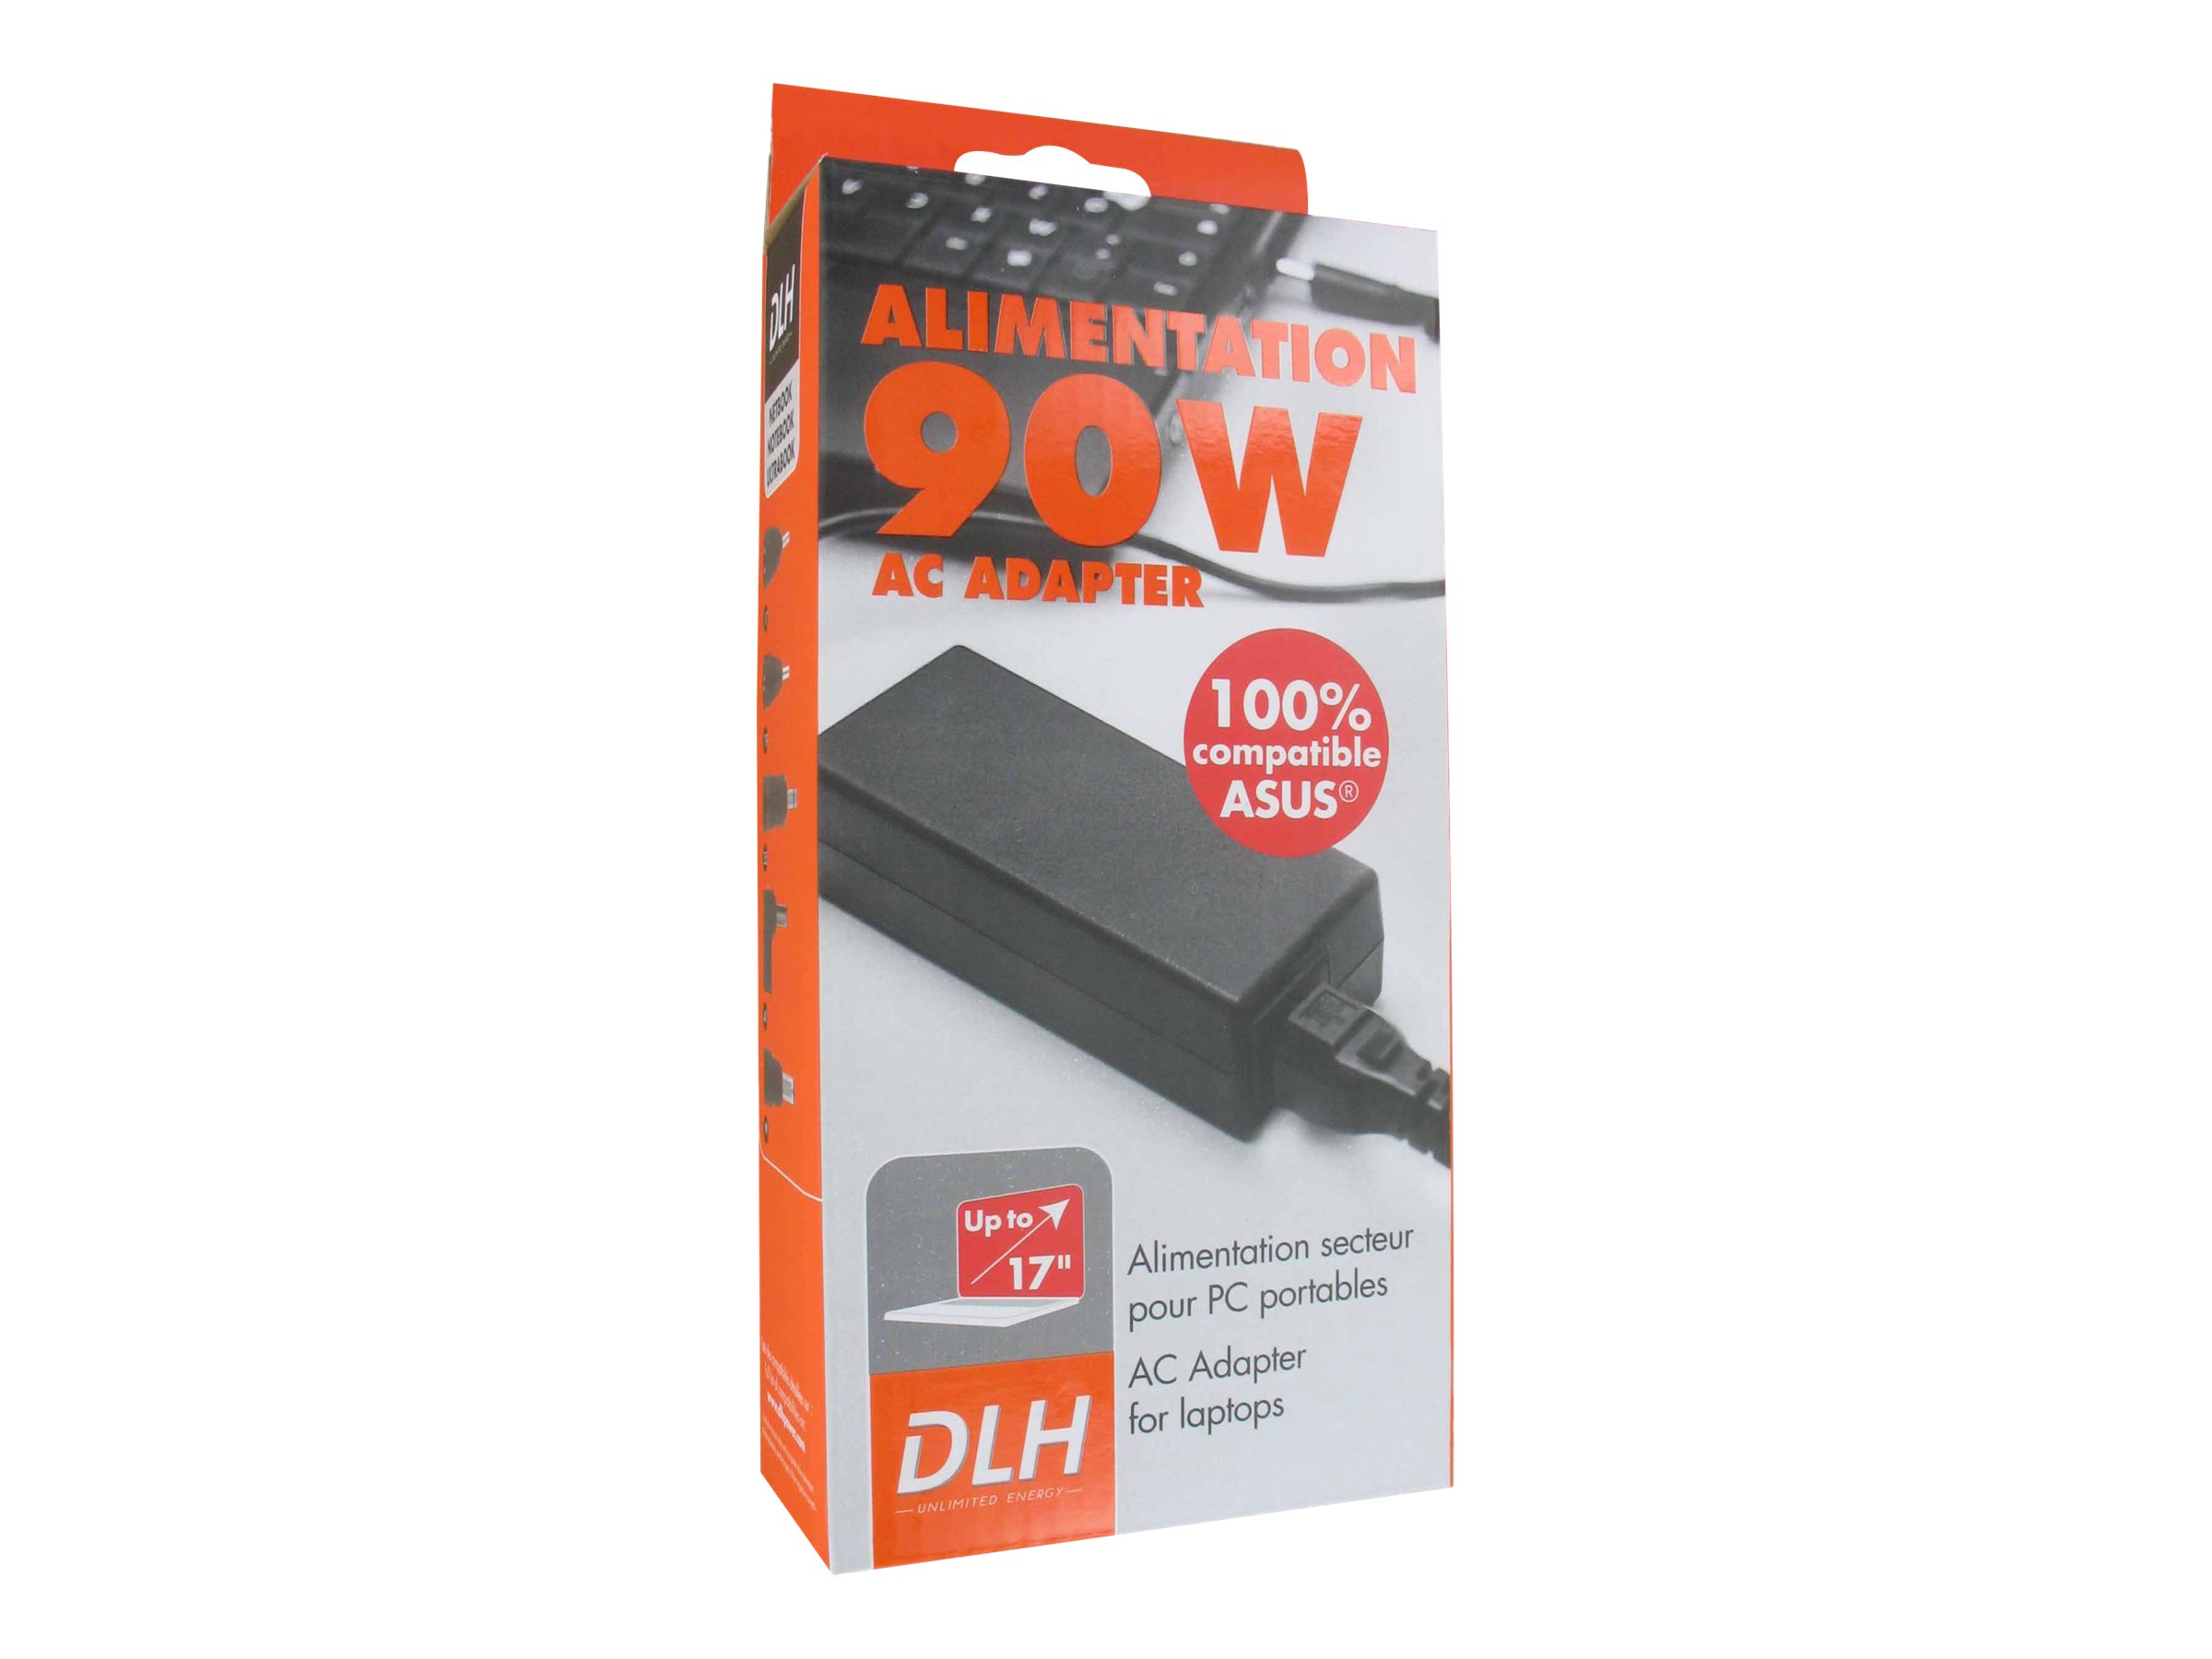 DLH DY-Al1934 - Chargeur de batterie pour pc portable 100% compatible ASUS 